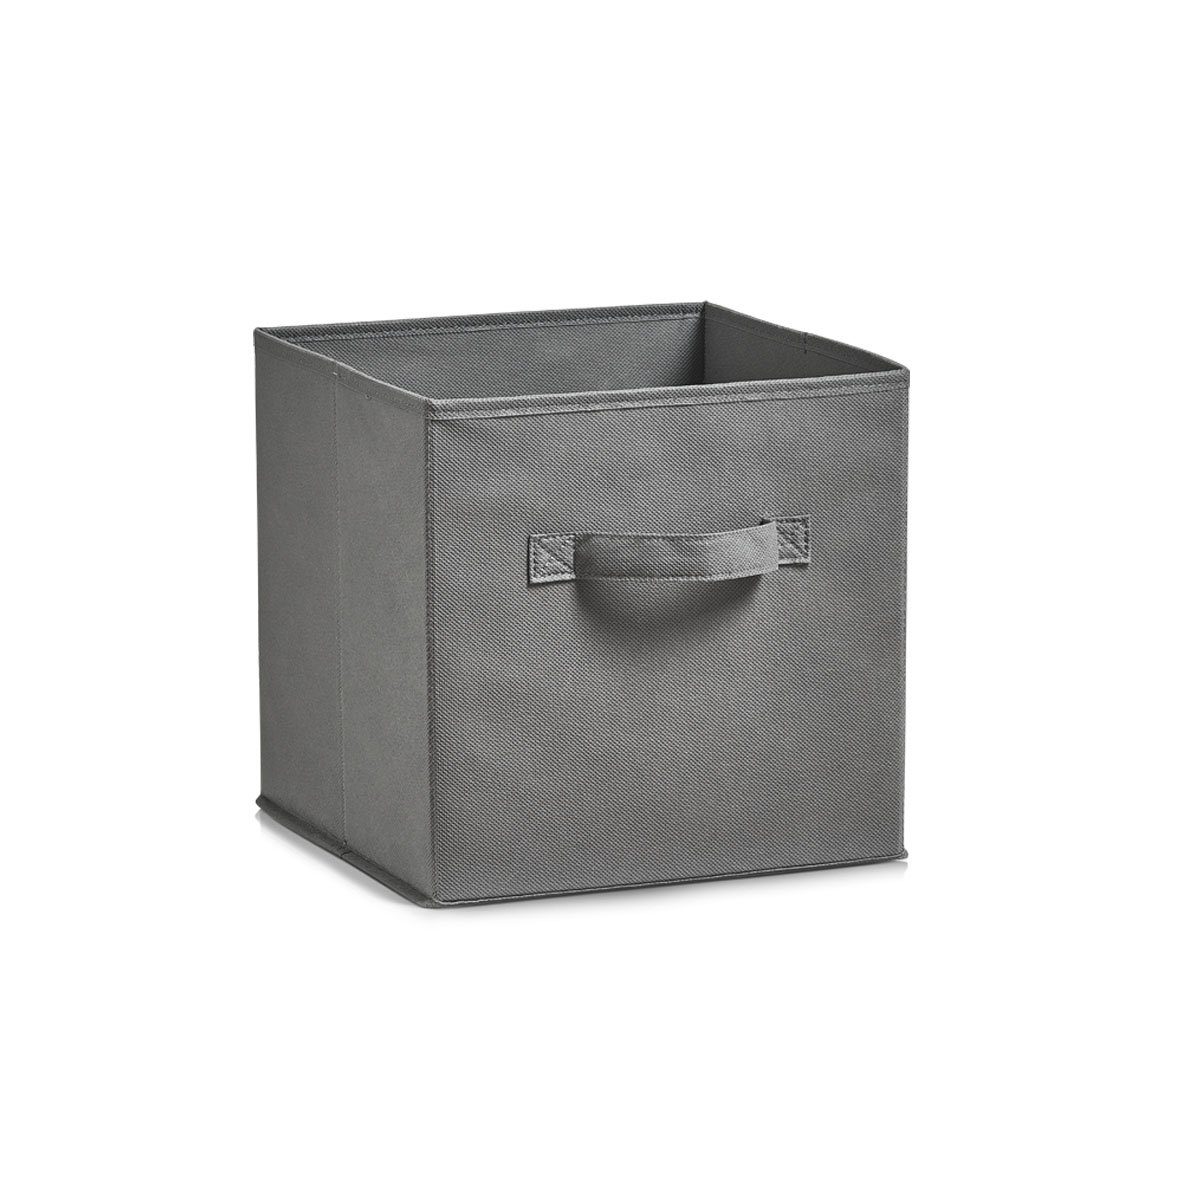 Zeller Present Aufbewahrungskorb Aufbewahrungsbox, Vlies, grau, 26 x 26 x 26 cm